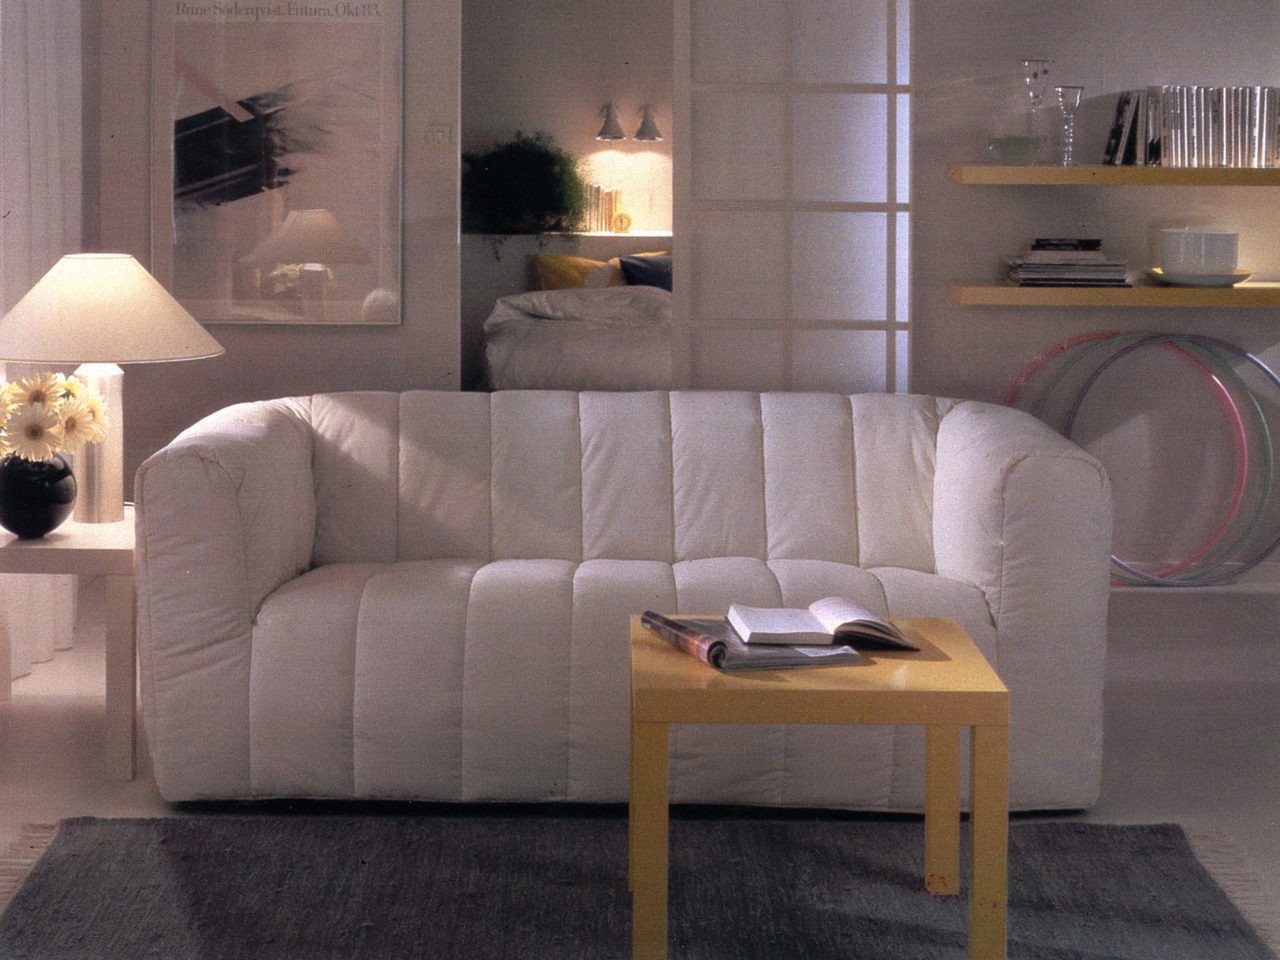 Pièce blanche avec un canapé KLIPPAN blanc moelleux au centre. Table basse et étagères murales en bois clair, modèle LACK.